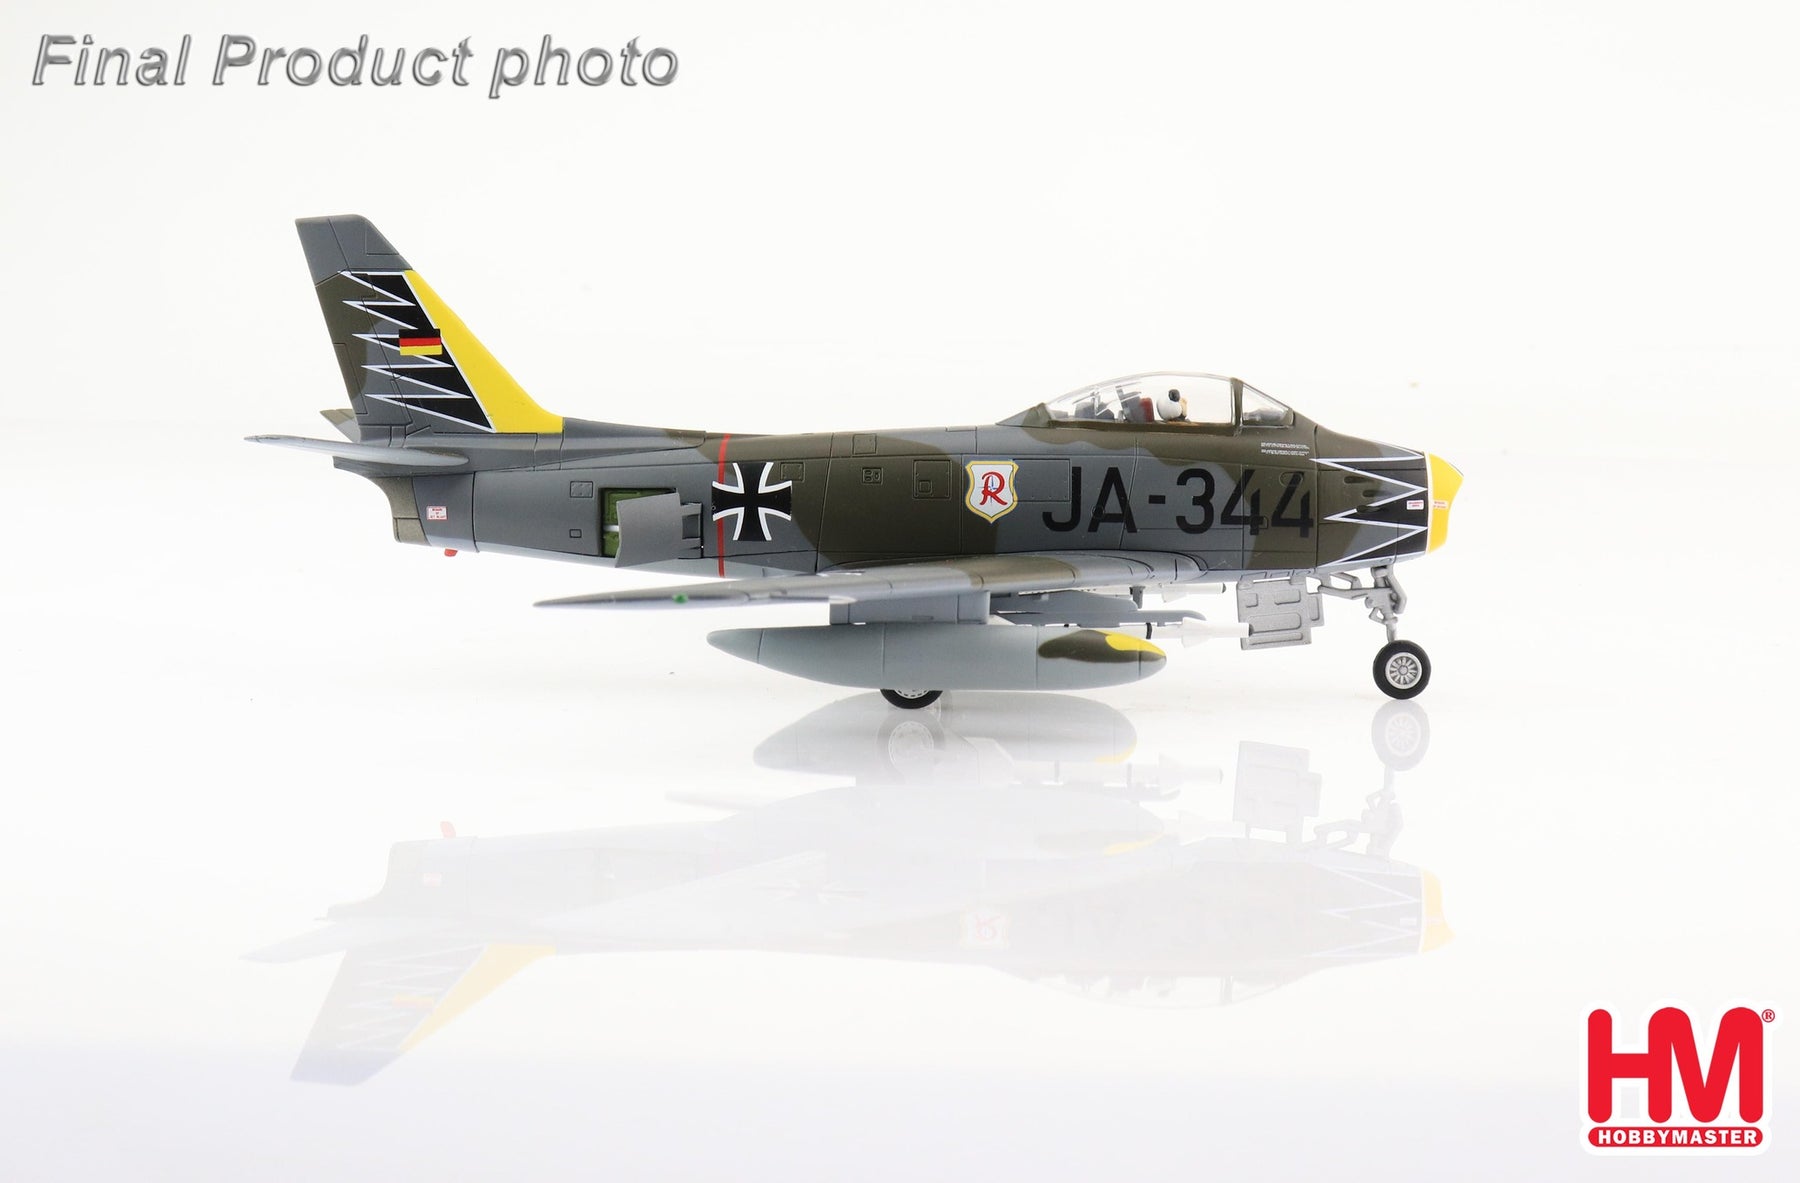 カナデアCL-13セイバーMk.6（F-86F-40） 西ドイツ空軍 第71戦闘航空団「リヒトホーフェン」 1961年 JA-344 1/72  [HA4319]